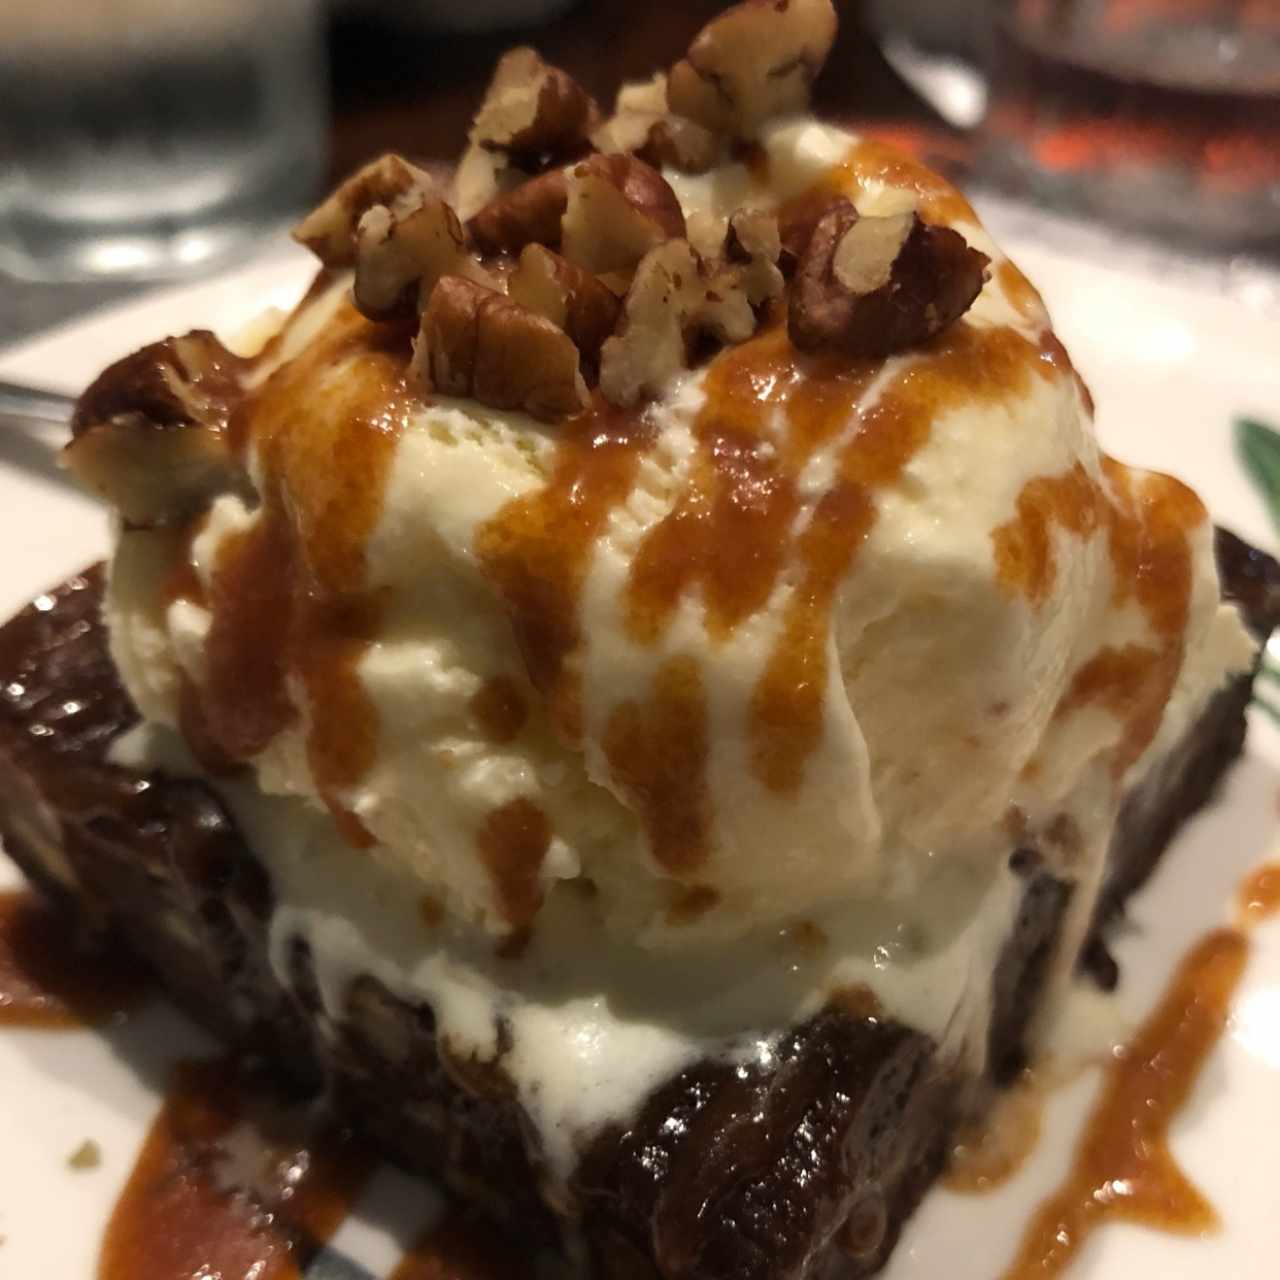 Brownie con Helado! 🤓💖 delicioso, postre favorito